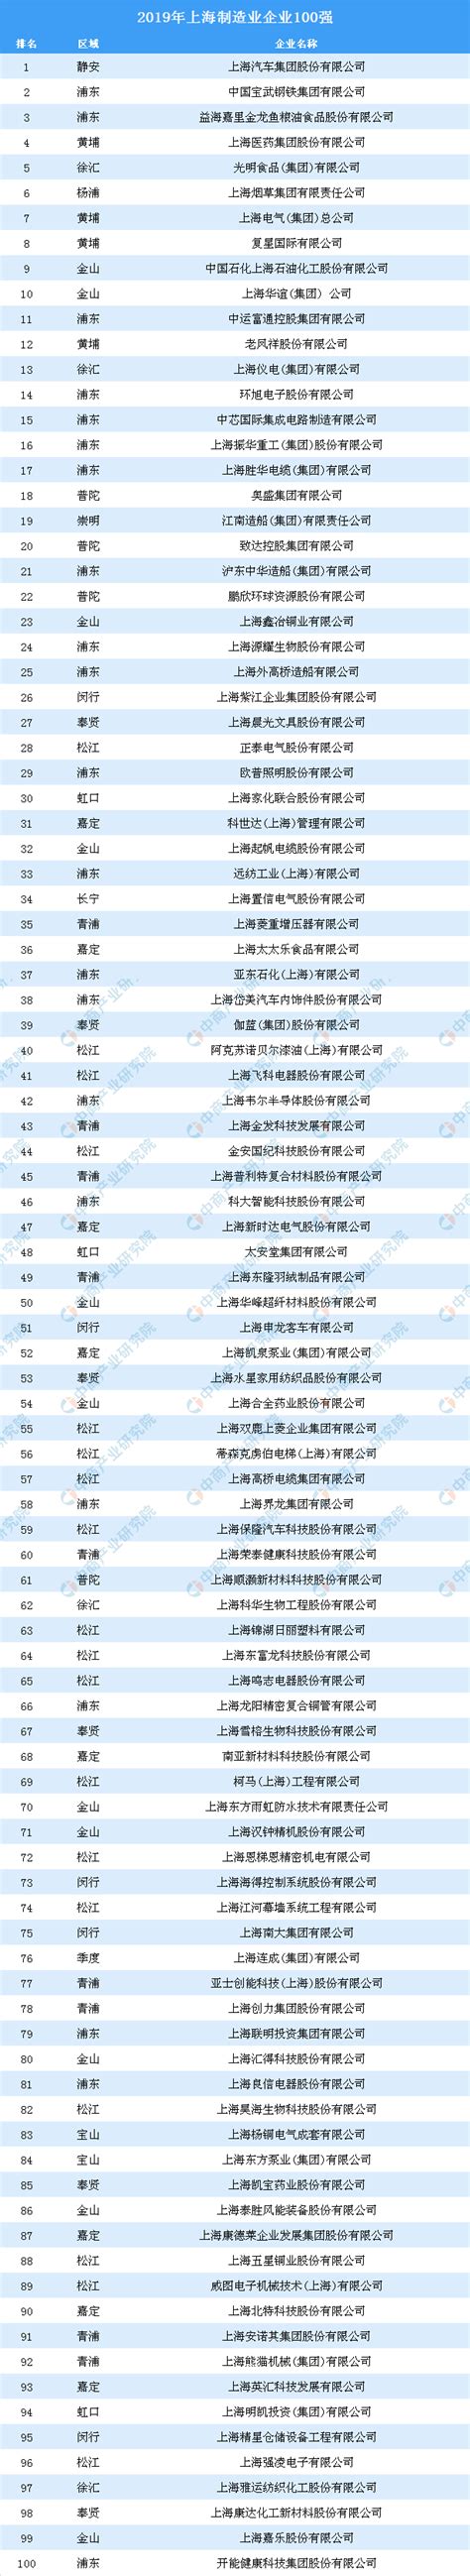 2019年上海制造业企业100强排行榜（全榜单）-产业排行榜-排行榜-中商情报网